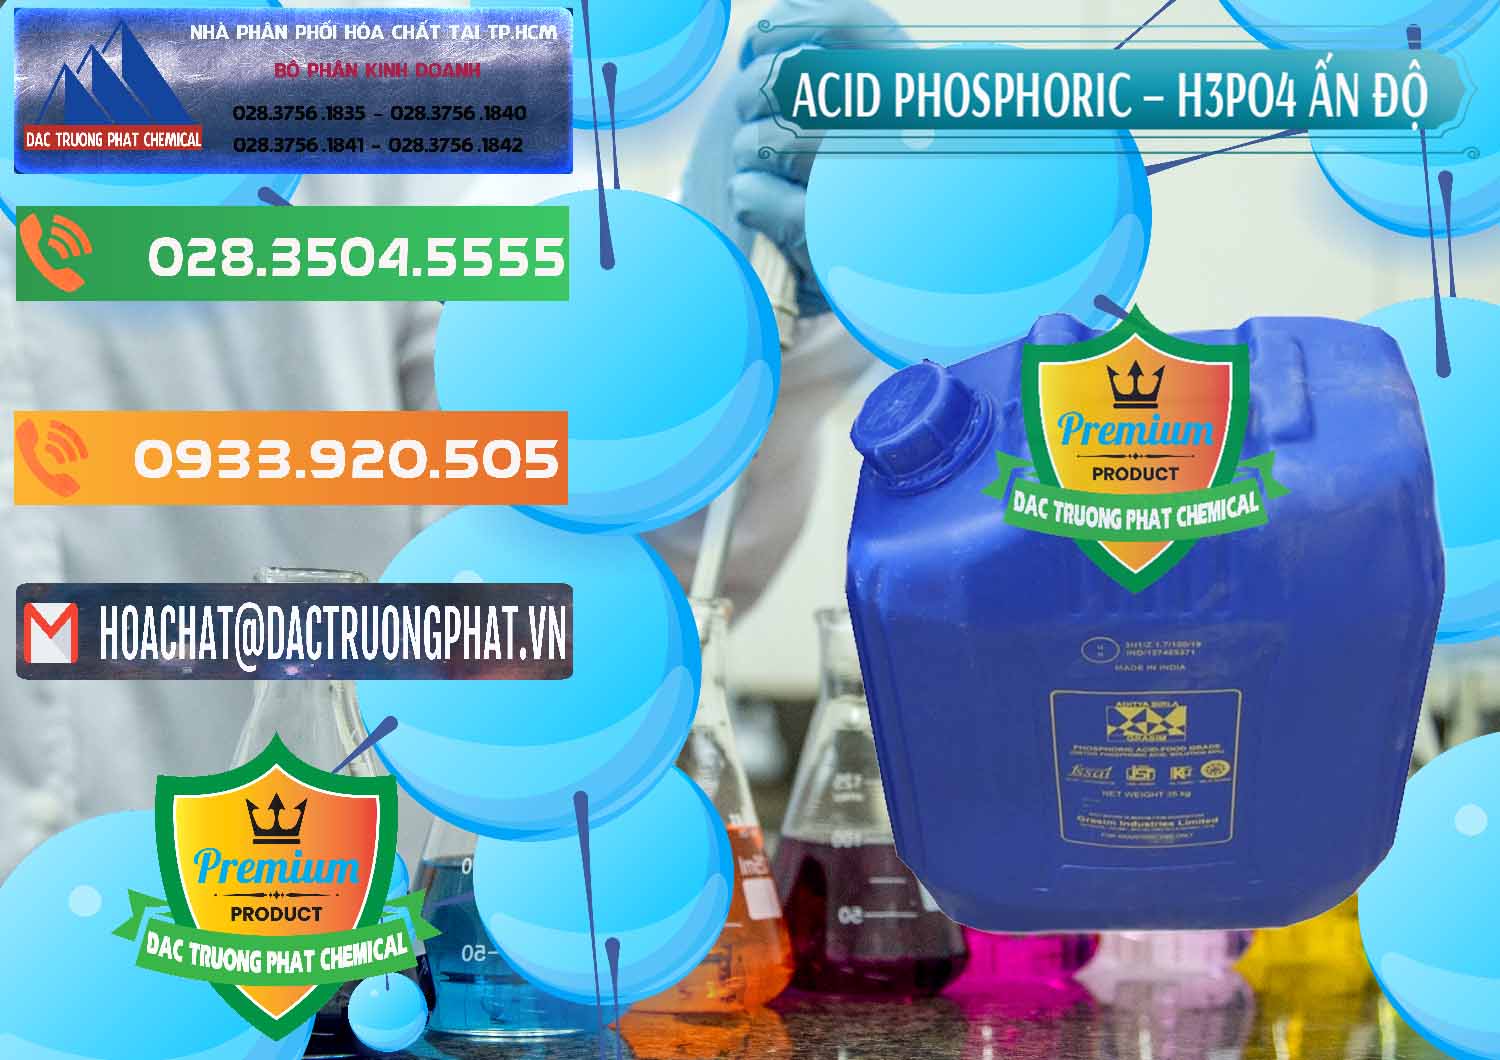 Chuyên phân phối - bán Axit Phosphoric H3PO4 85% Ấn Độ - 0350 - Cty chuyên phân phối - bán hóa chất tại TP.HCM - hoachatxulynuoc.com.vn